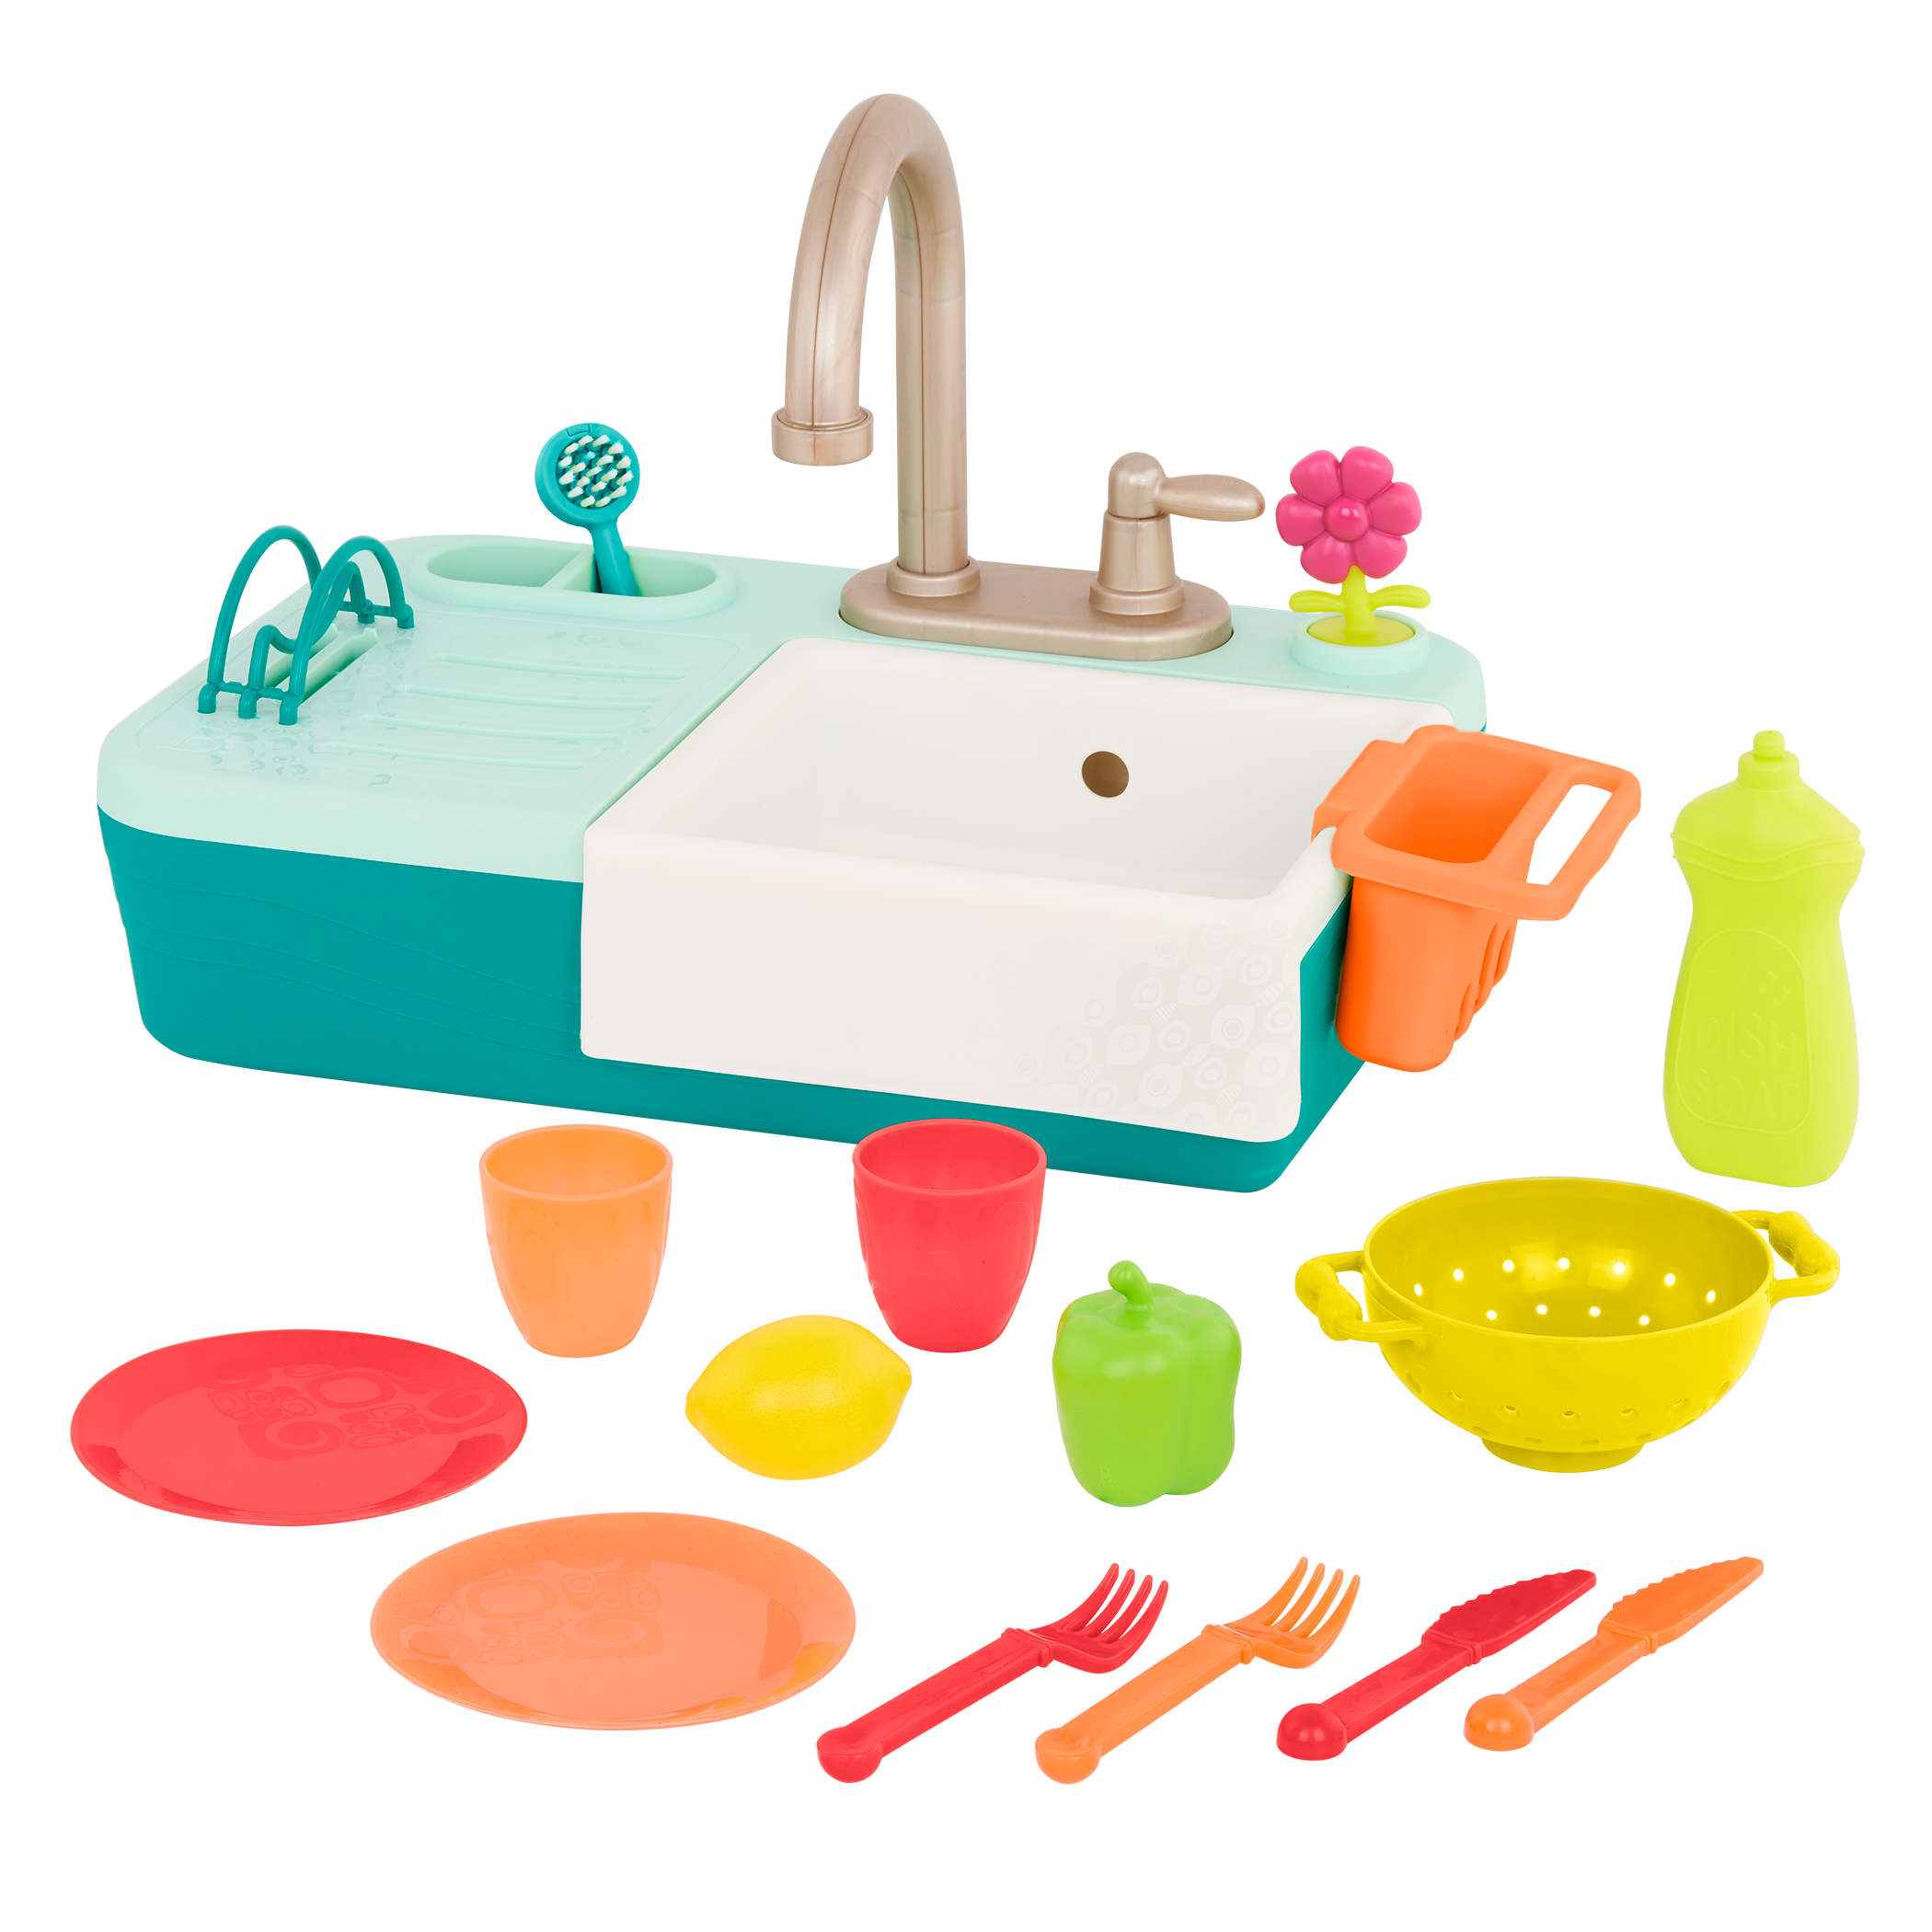 Kitchen Sink Play Set / Flisat Sink Insert / Play Sink / Flisat Dish Rack /  Flisat BBQ Insert / BBQ Grill / Play Kitchen / Flisat Insert 